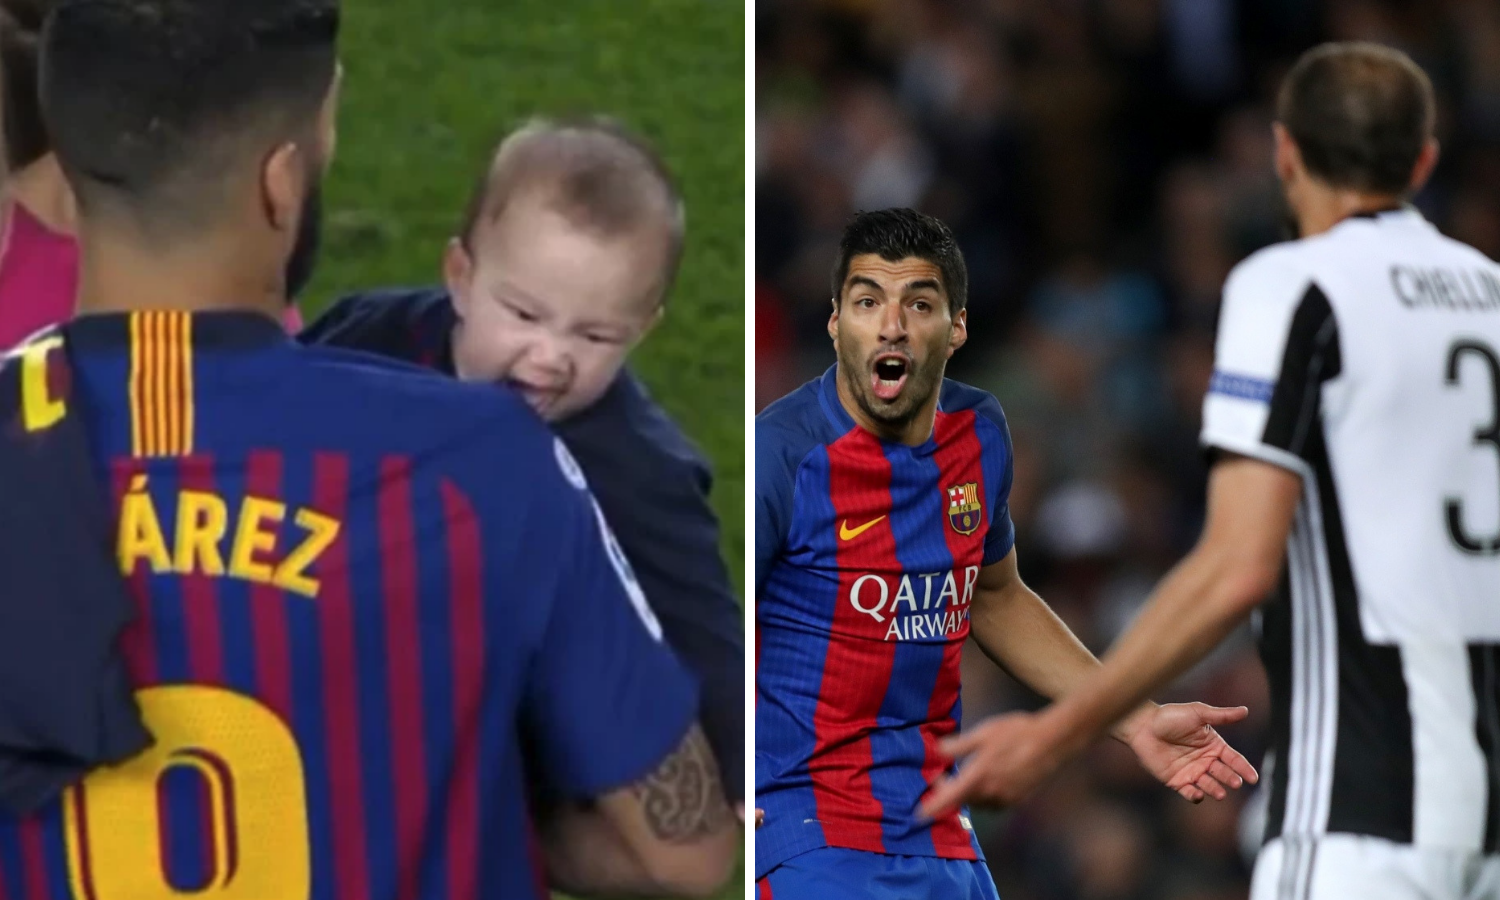 Kakav otac, takav sin: Suareza njegov sinčić ugrizao za rame